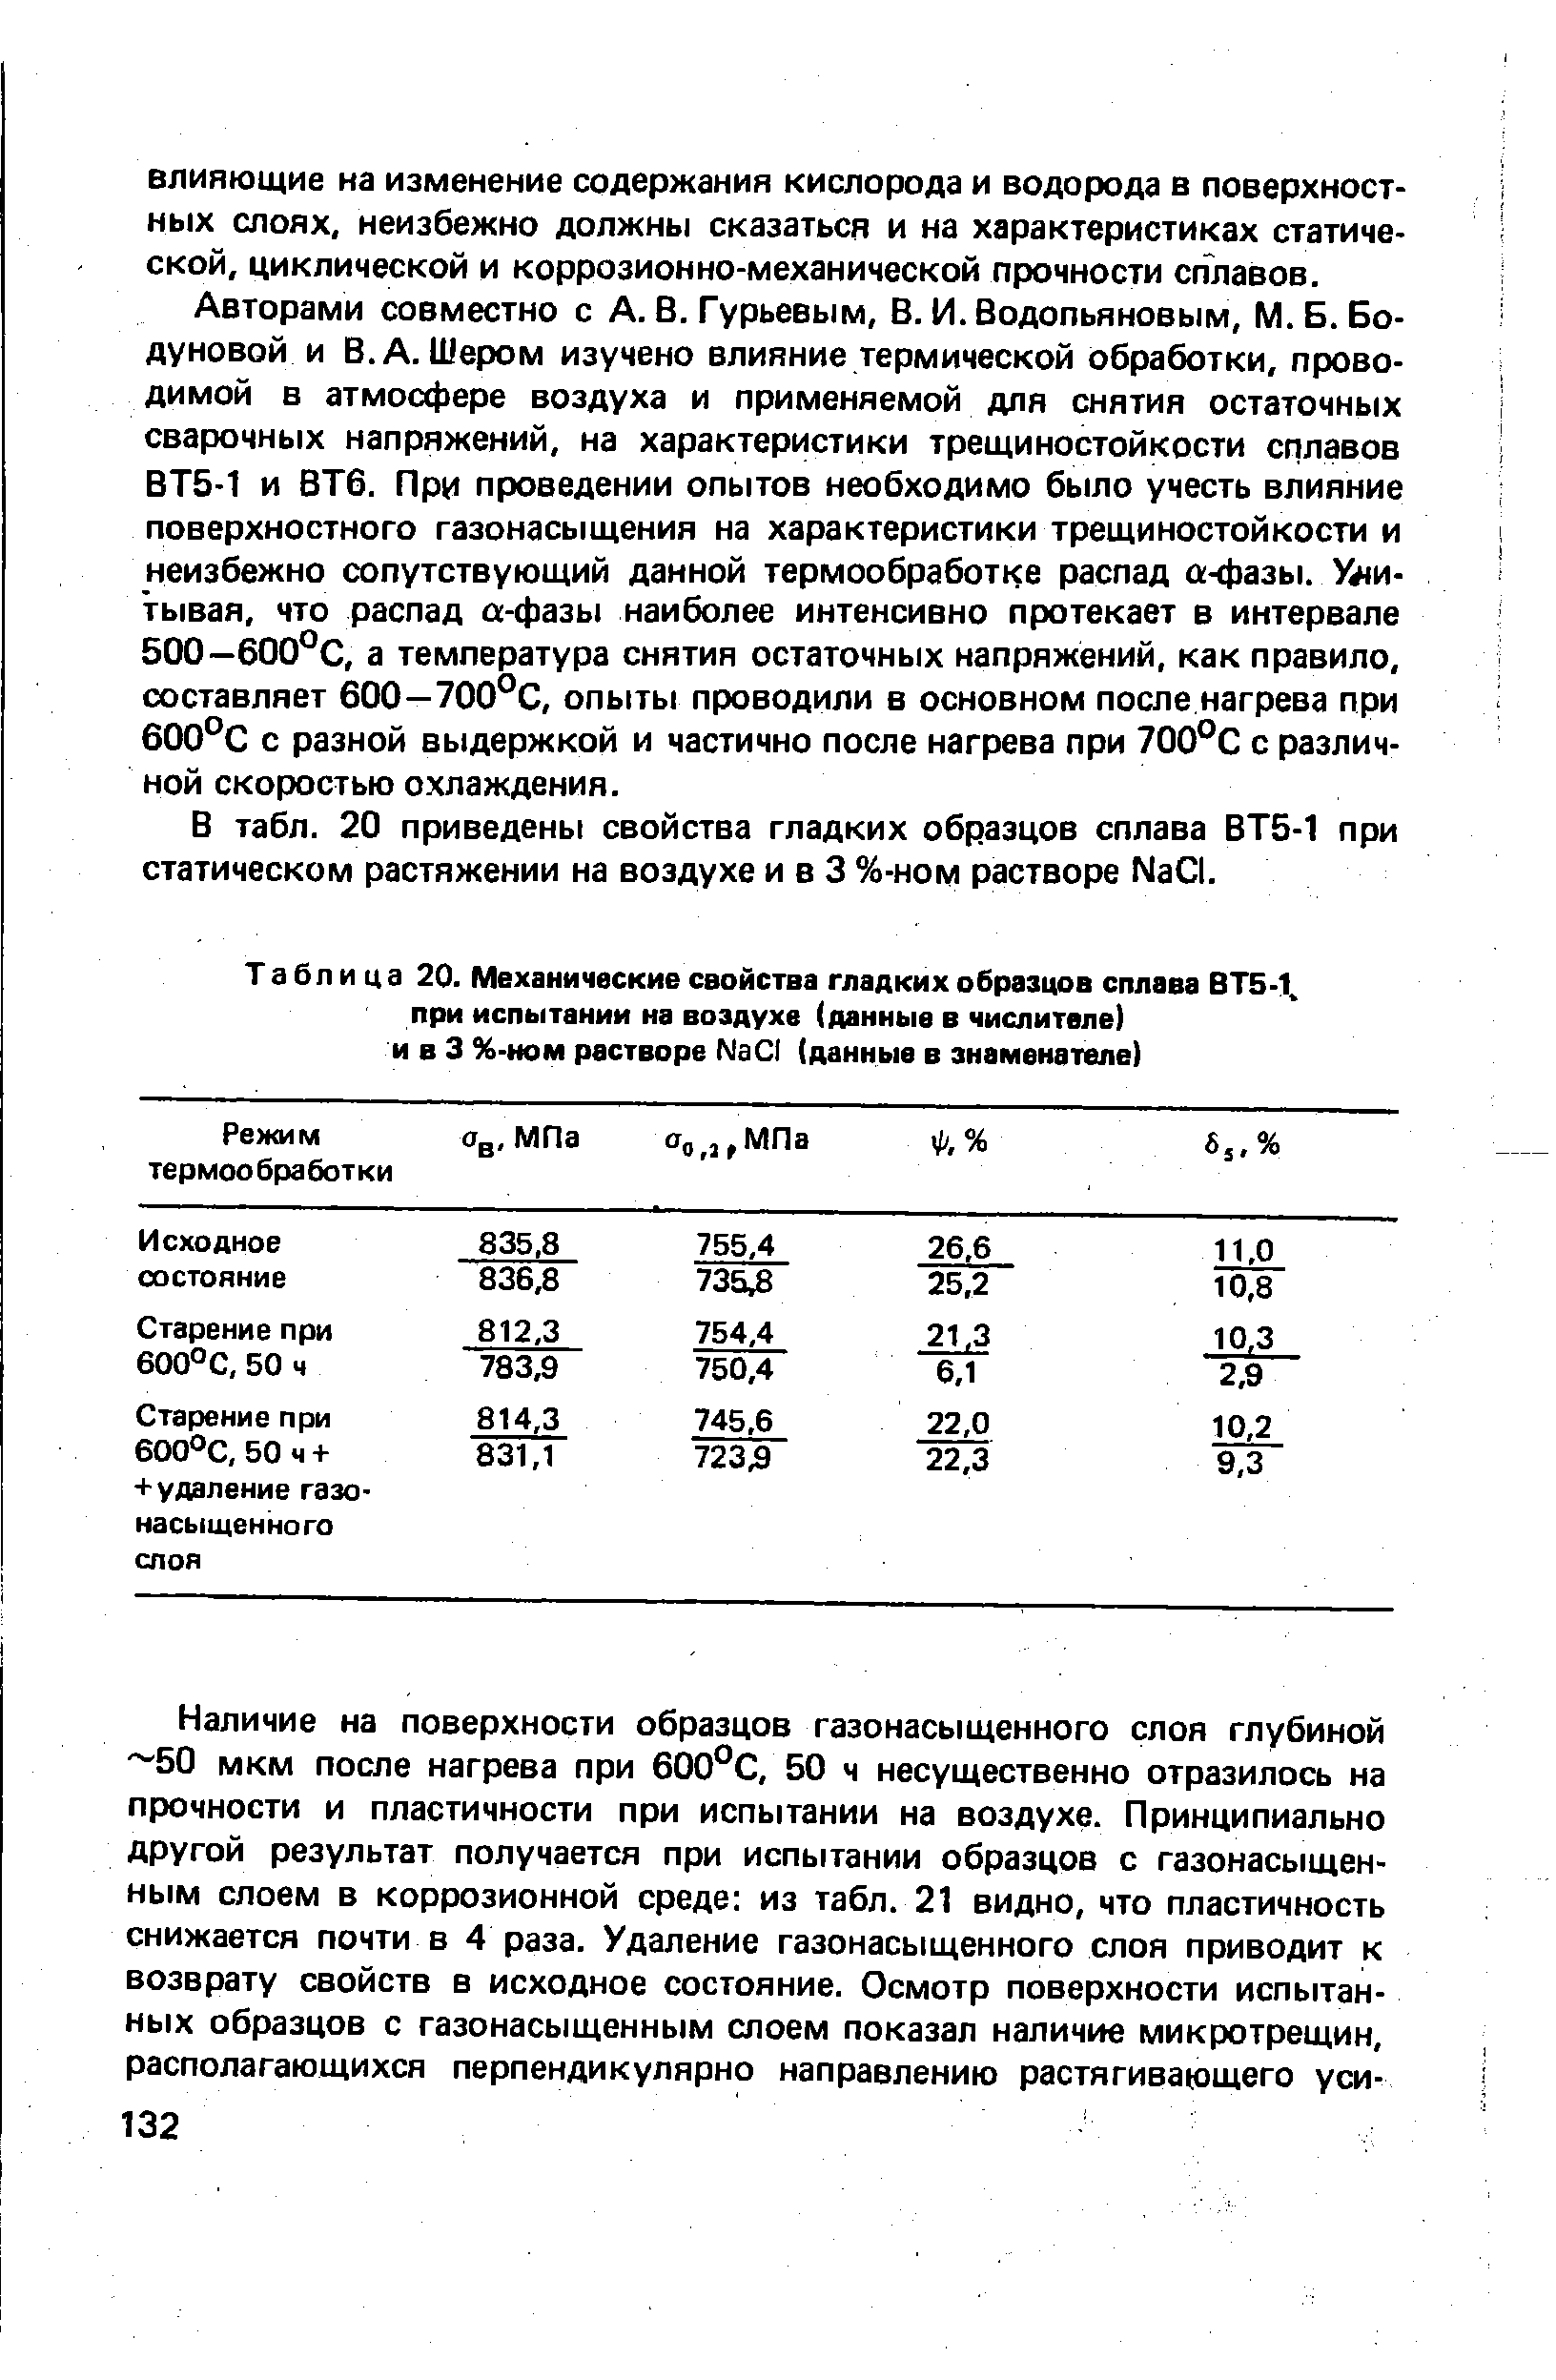 Таблица 20. Механические свойства гладких образцов сплава ВТ5-1 при испытании на воздухе (данные в числителе) и в 3 %-ном растворе N301 (данные в знаменателе)
